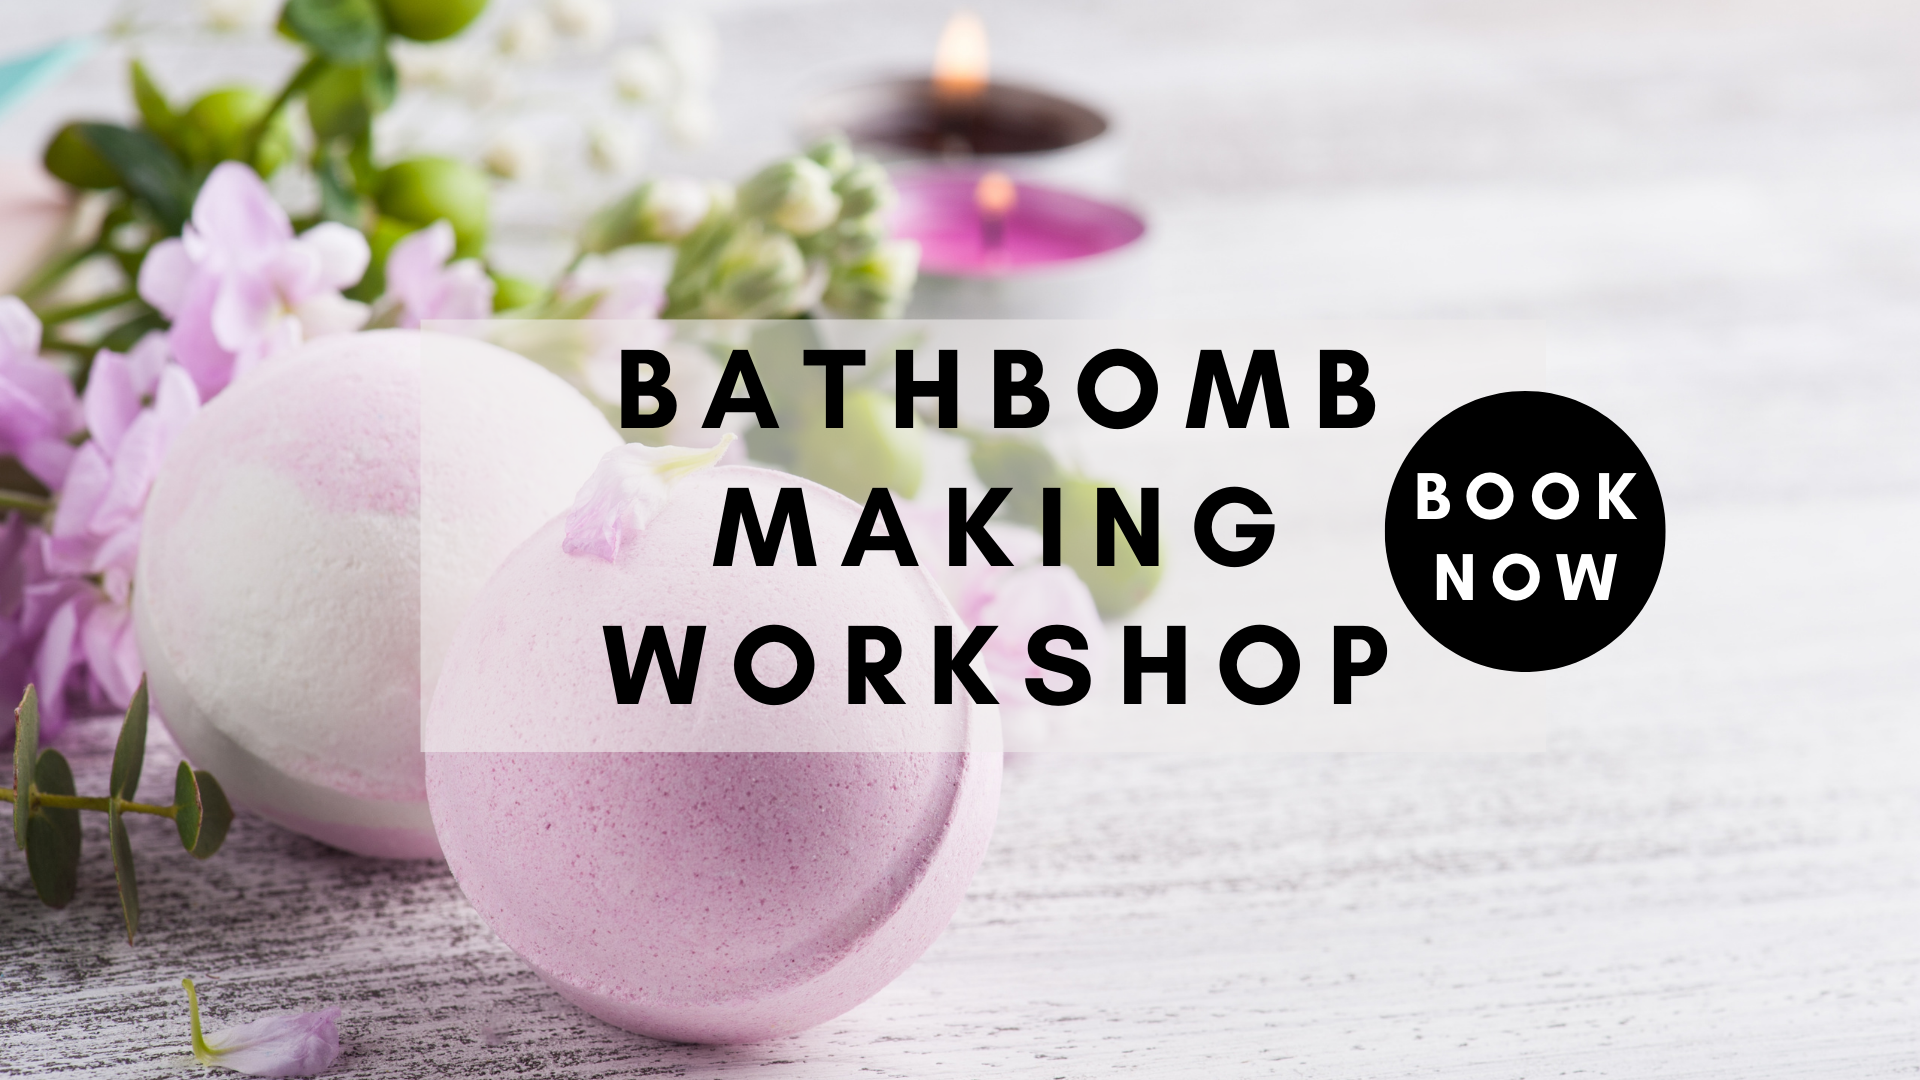 Bathbomb workshop